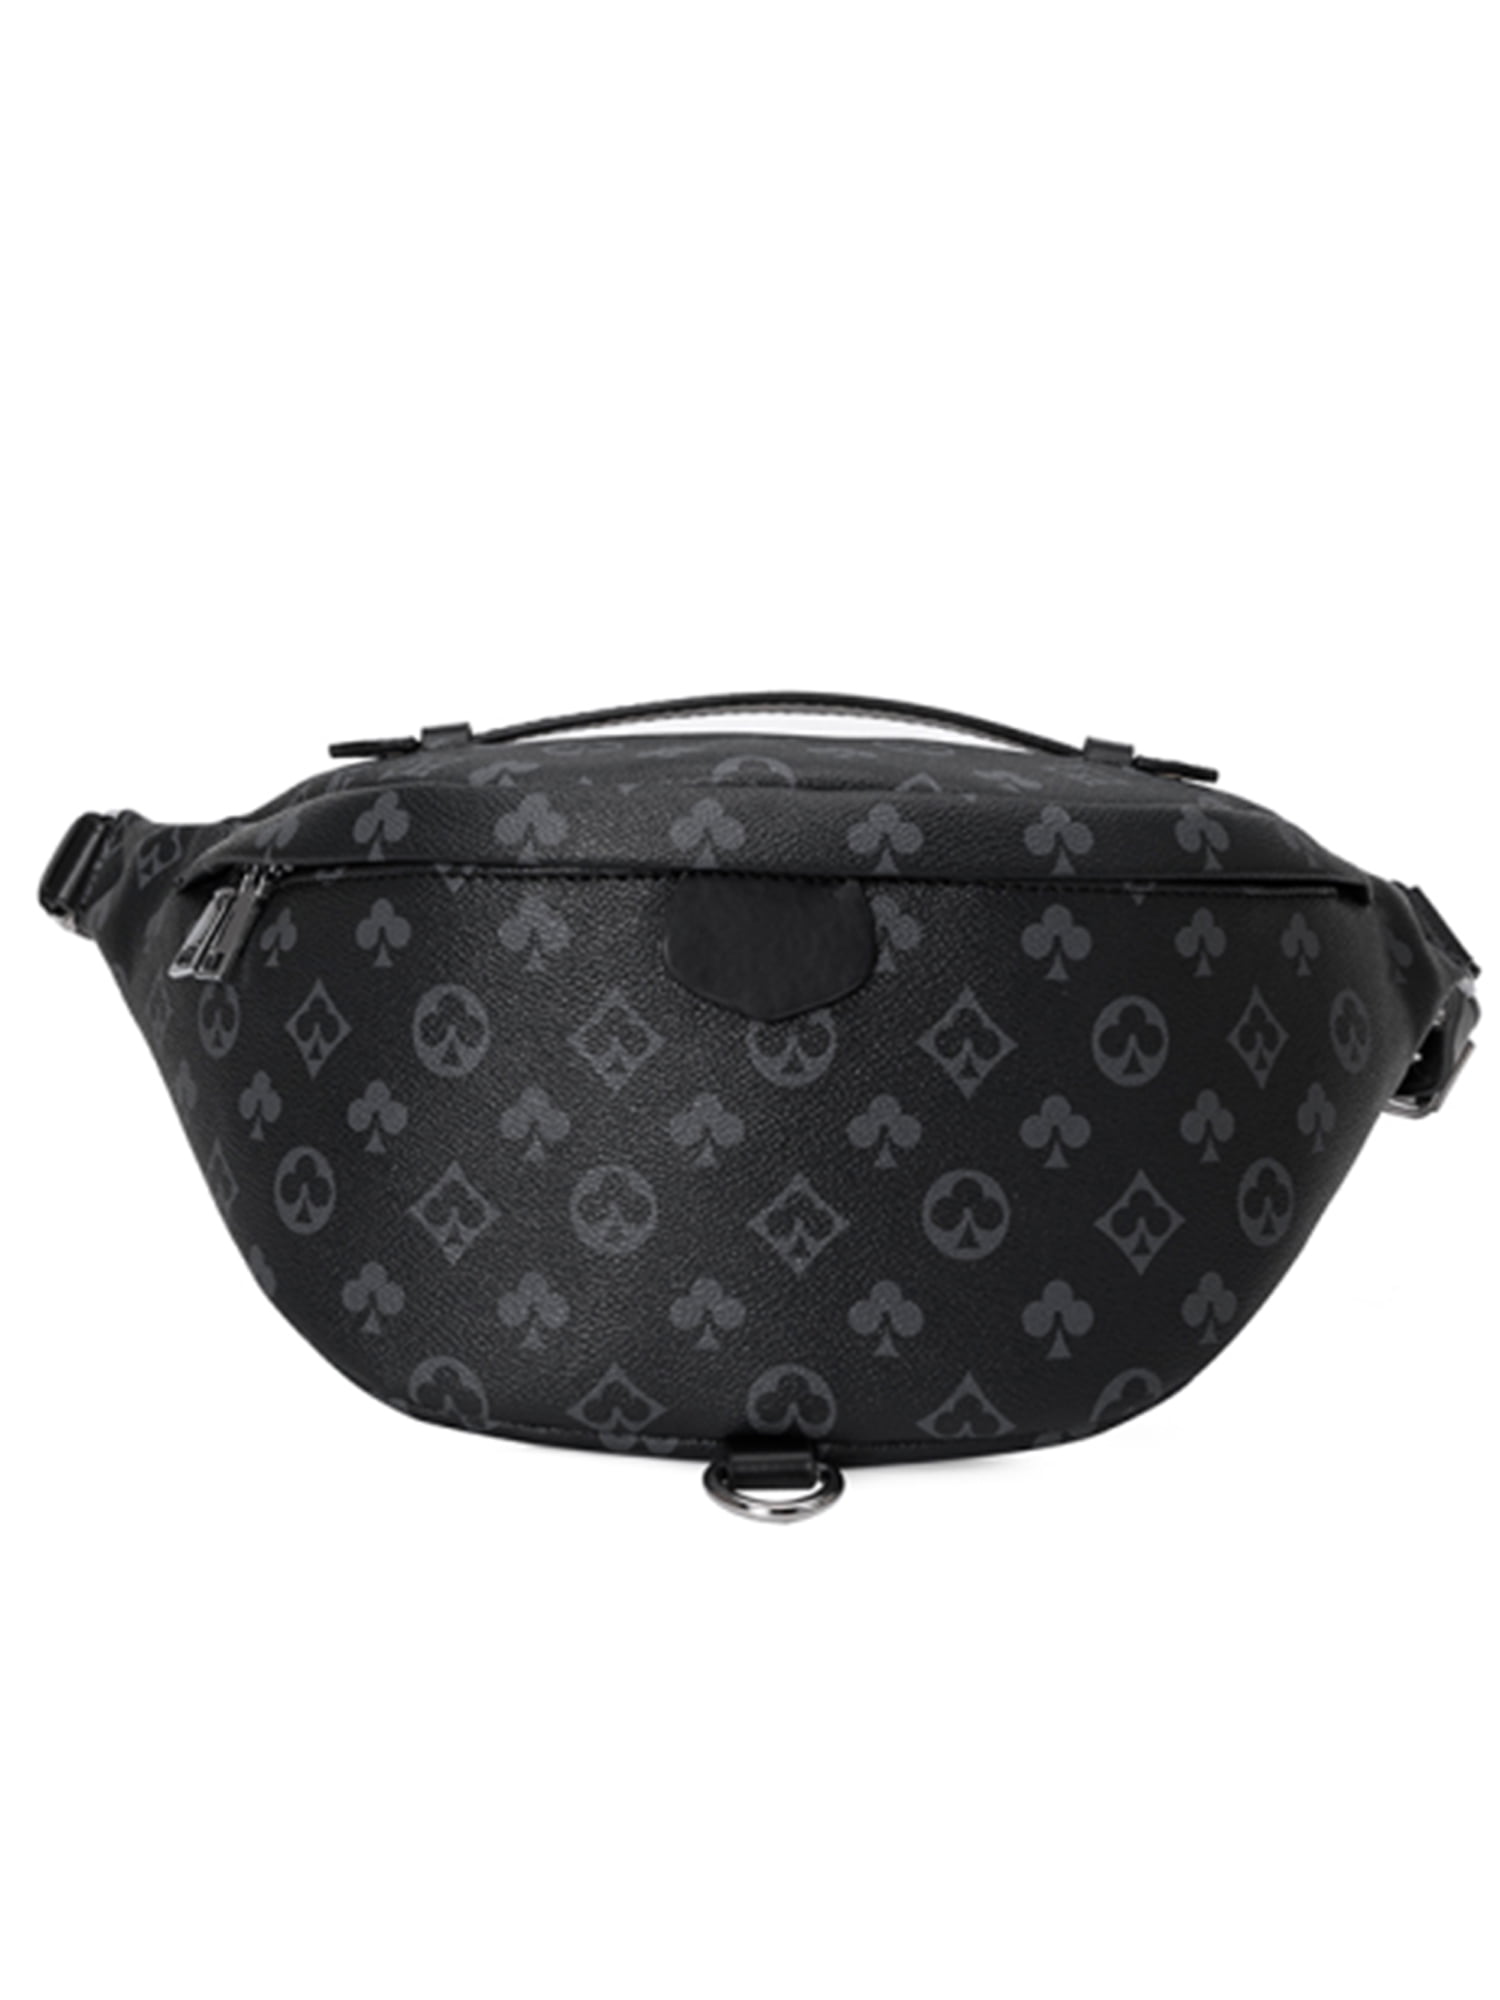 all black louis belt bag